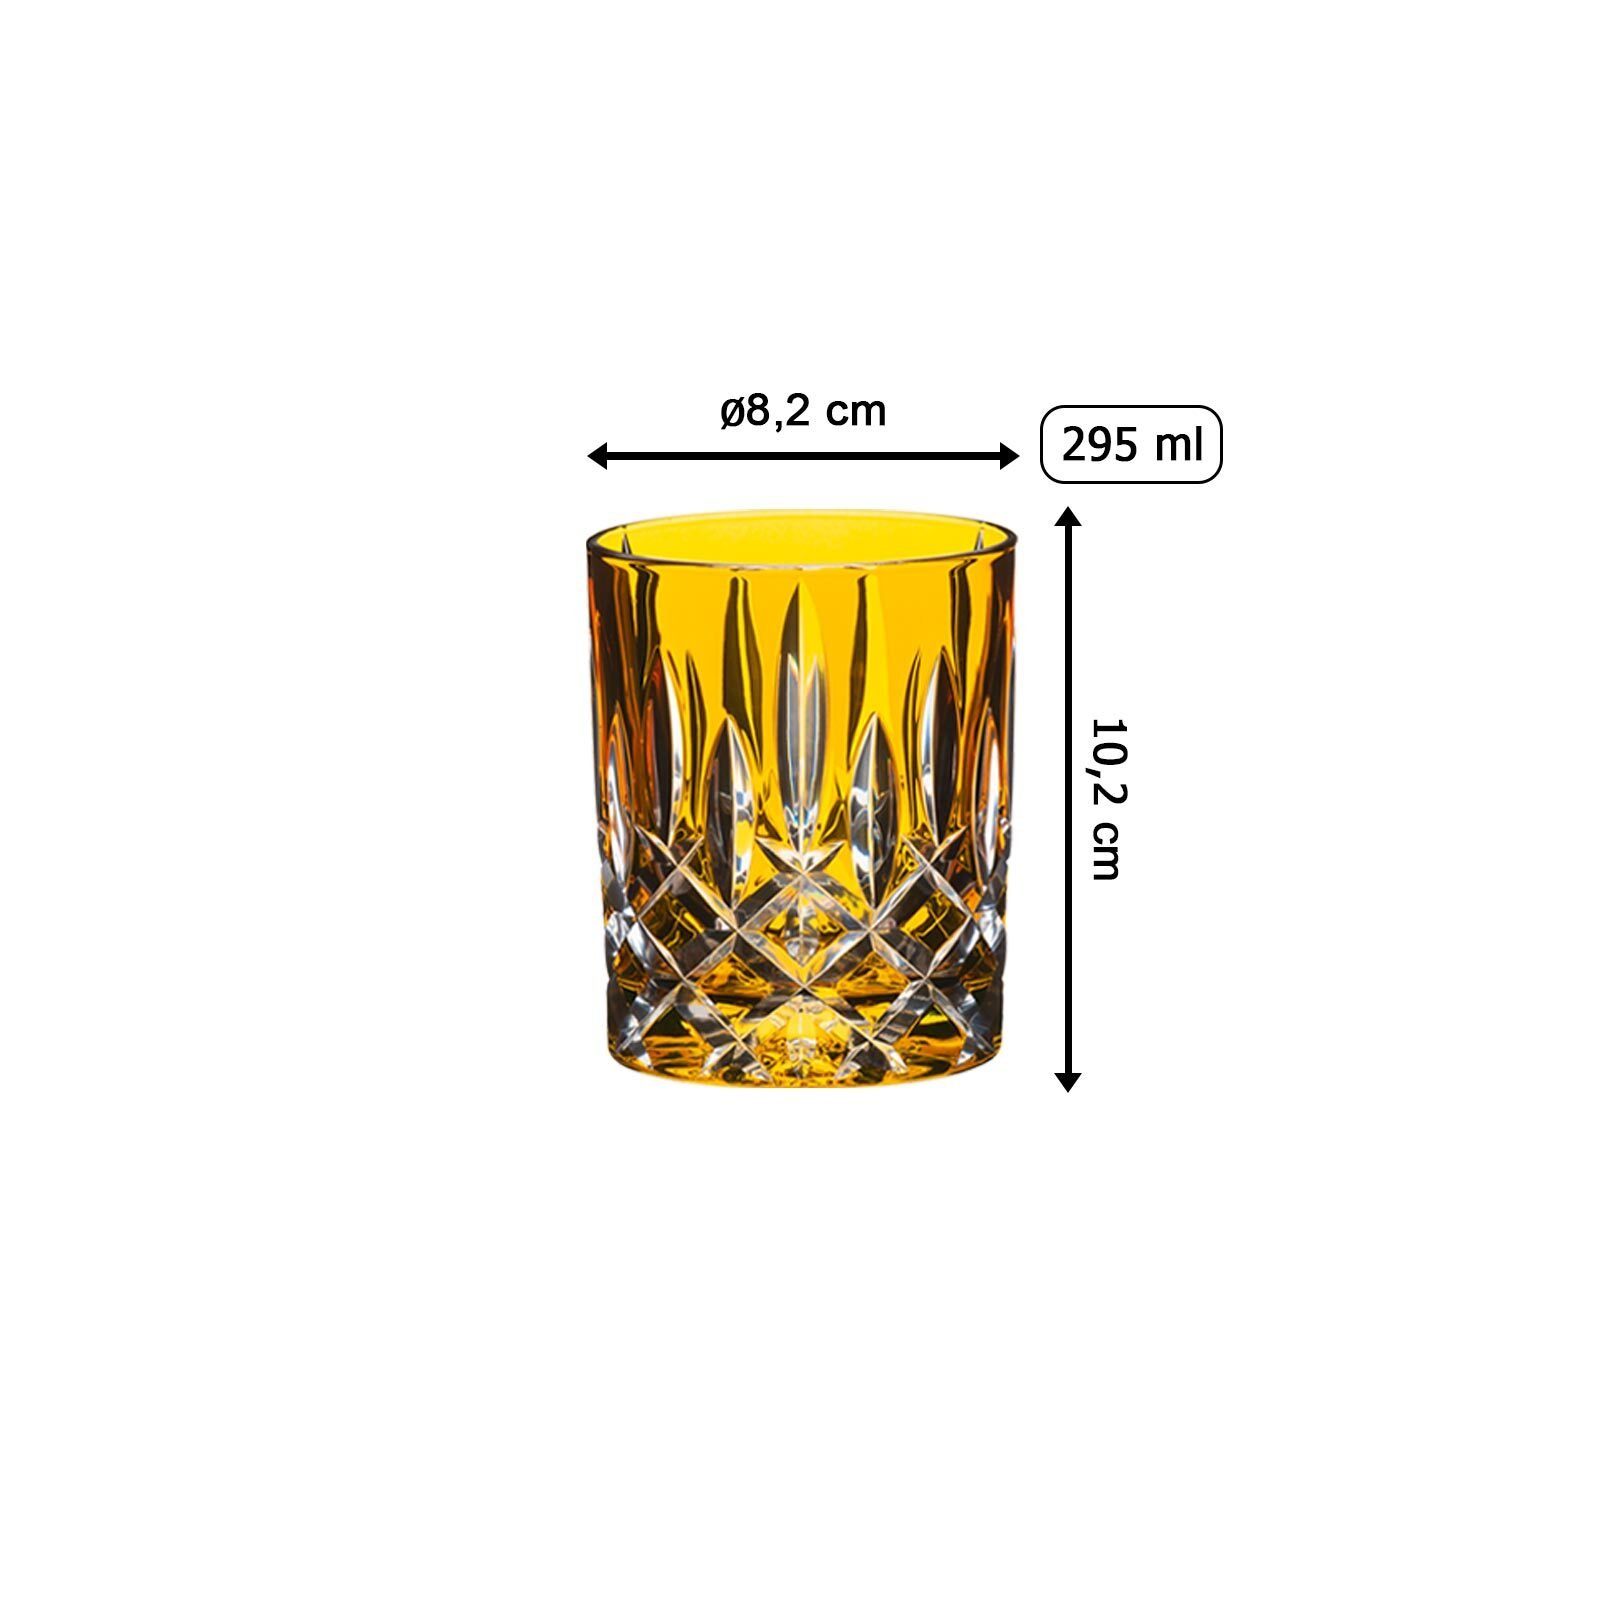 295 ml, Whiskyglas Laudon Glas RIEDEL Whiskyglas Glas Bernstein